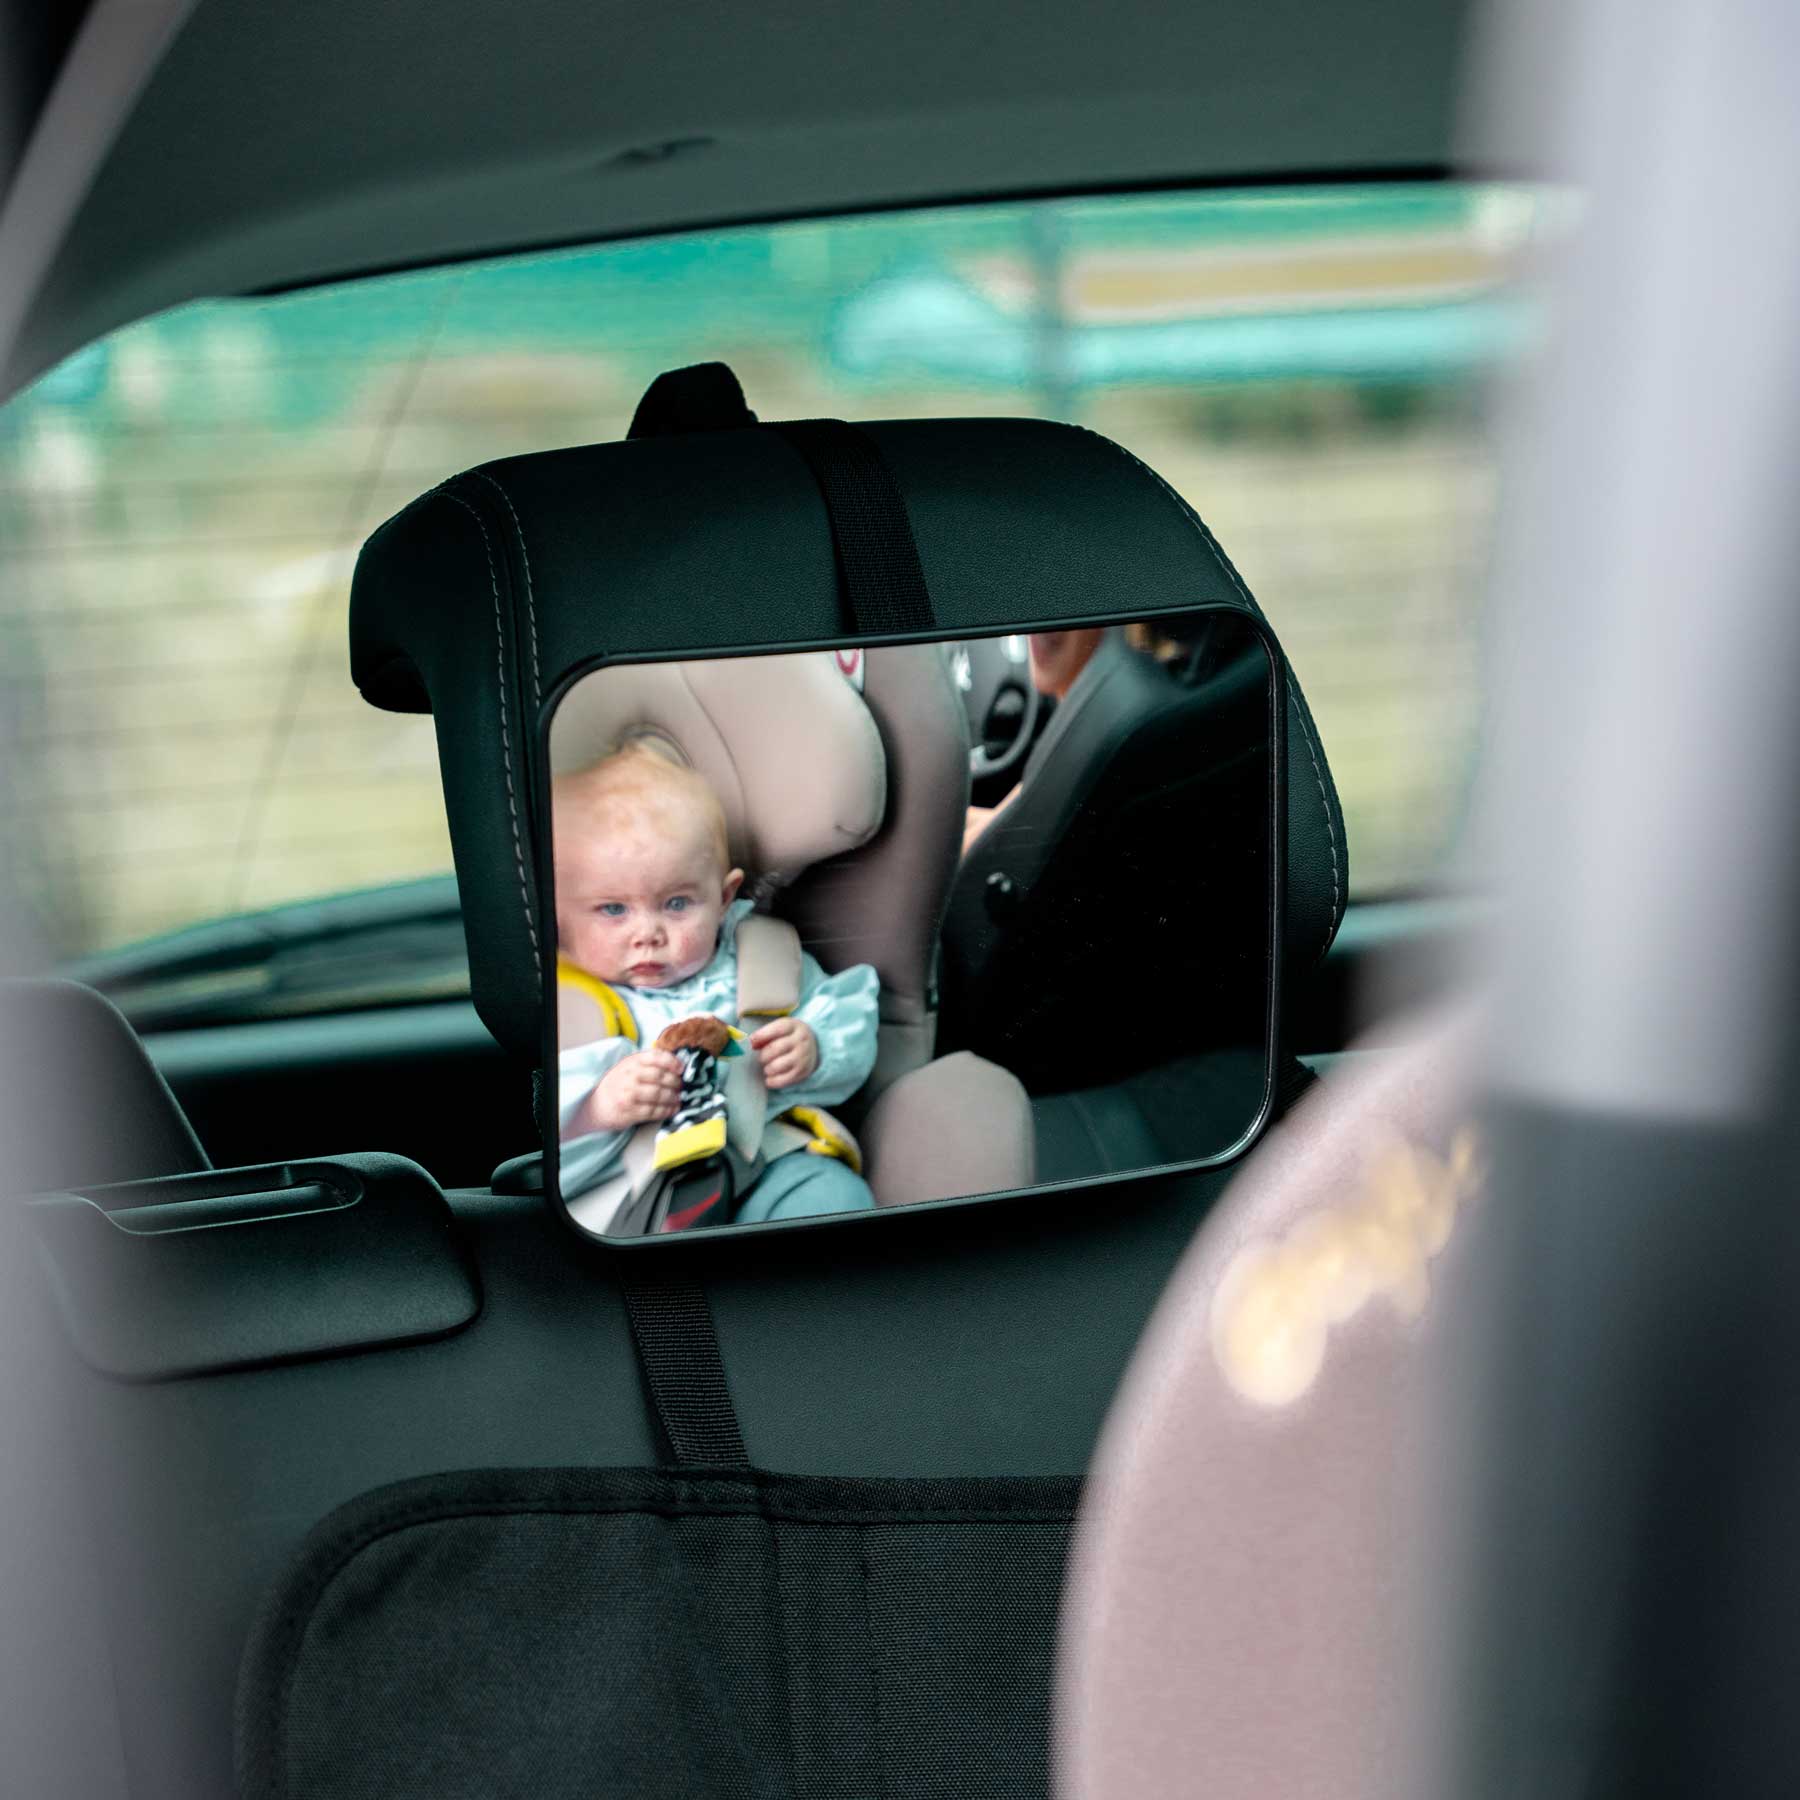 Miroir auto bébé - Retroviseur voiture bébé - Miroir bébé pour voiture -  Miroir lumineux voiture - Mirroir siège rrière bébé - Miroir Lumineux  Voiture